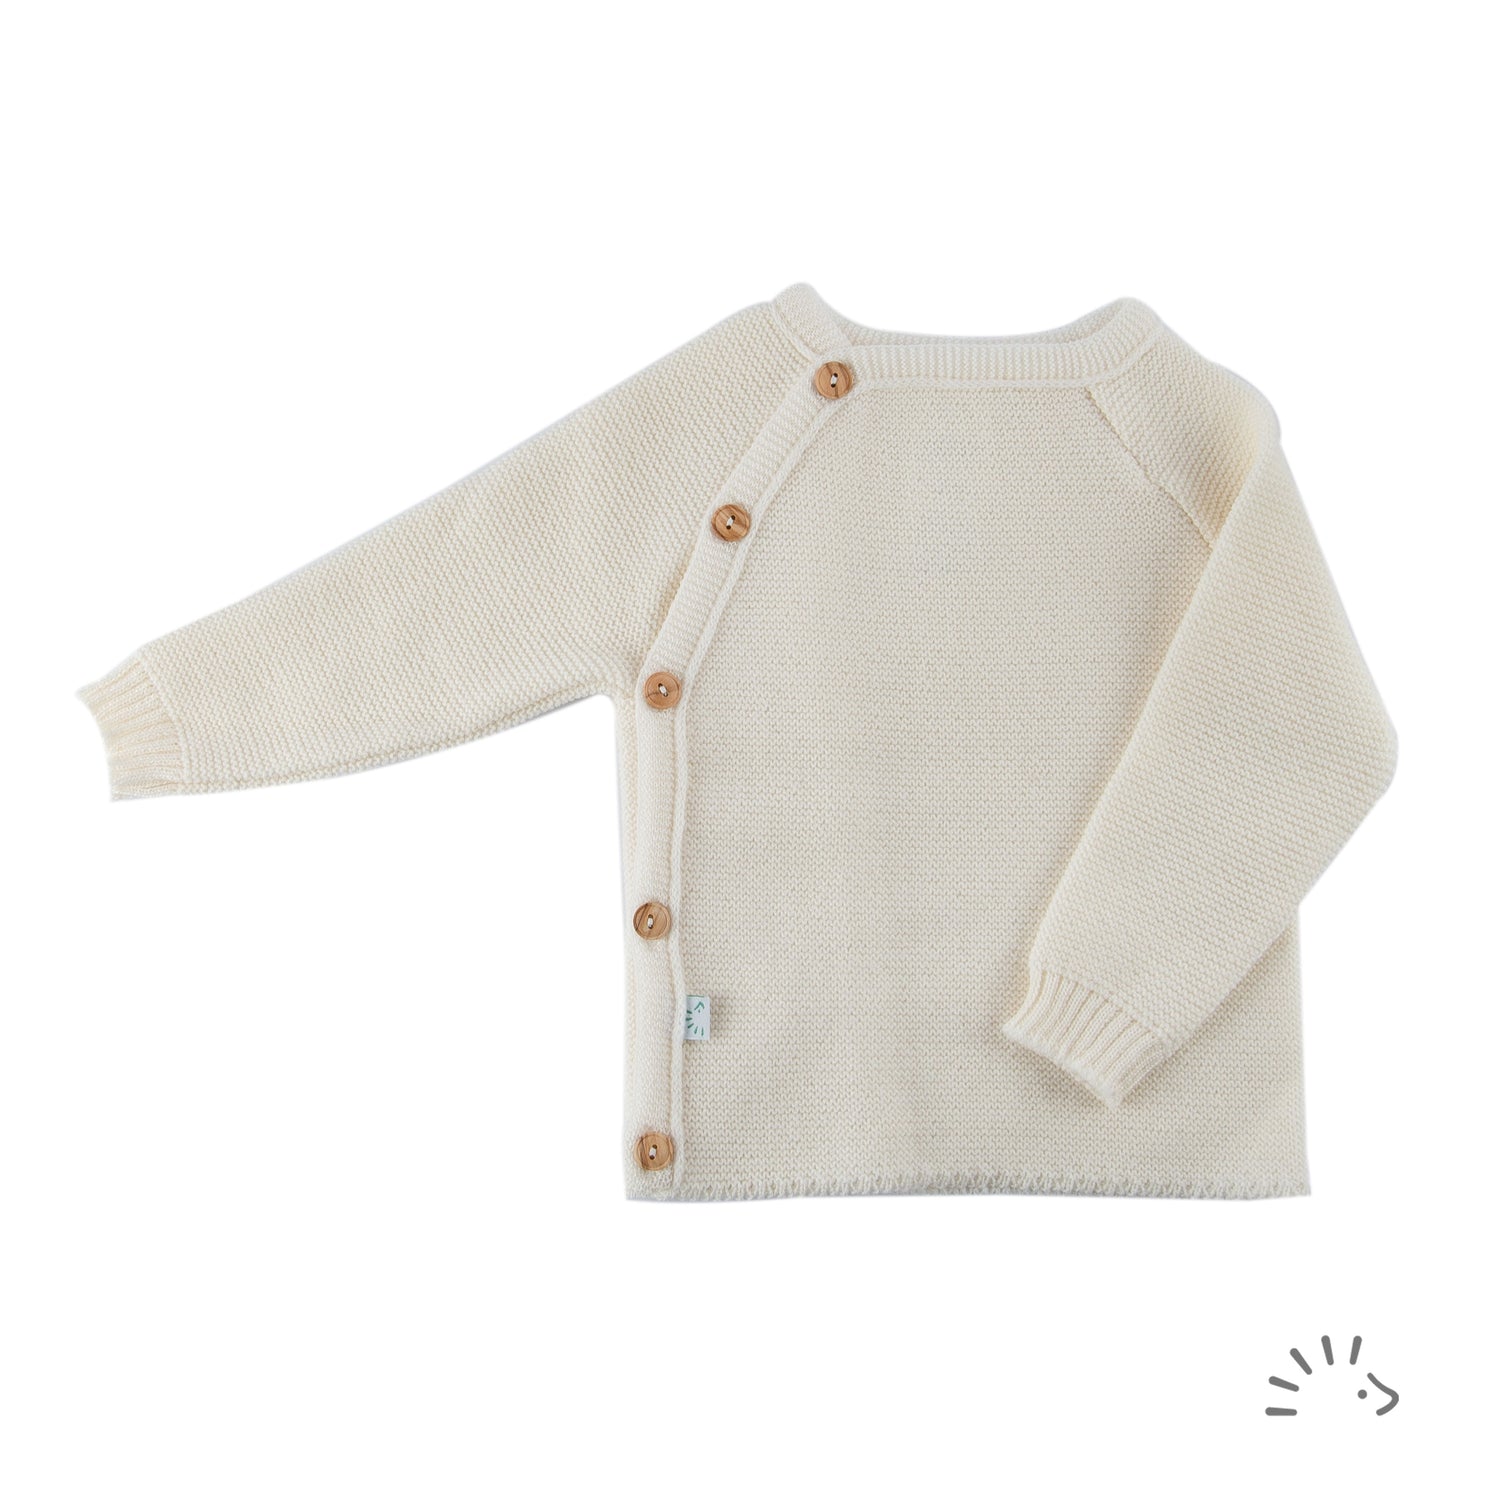 Das Wickelhemd für Mädchen und Jungen aus weicher kbT Wolle ist ein besonders beliebtes und praktisches Kleidungsstück.